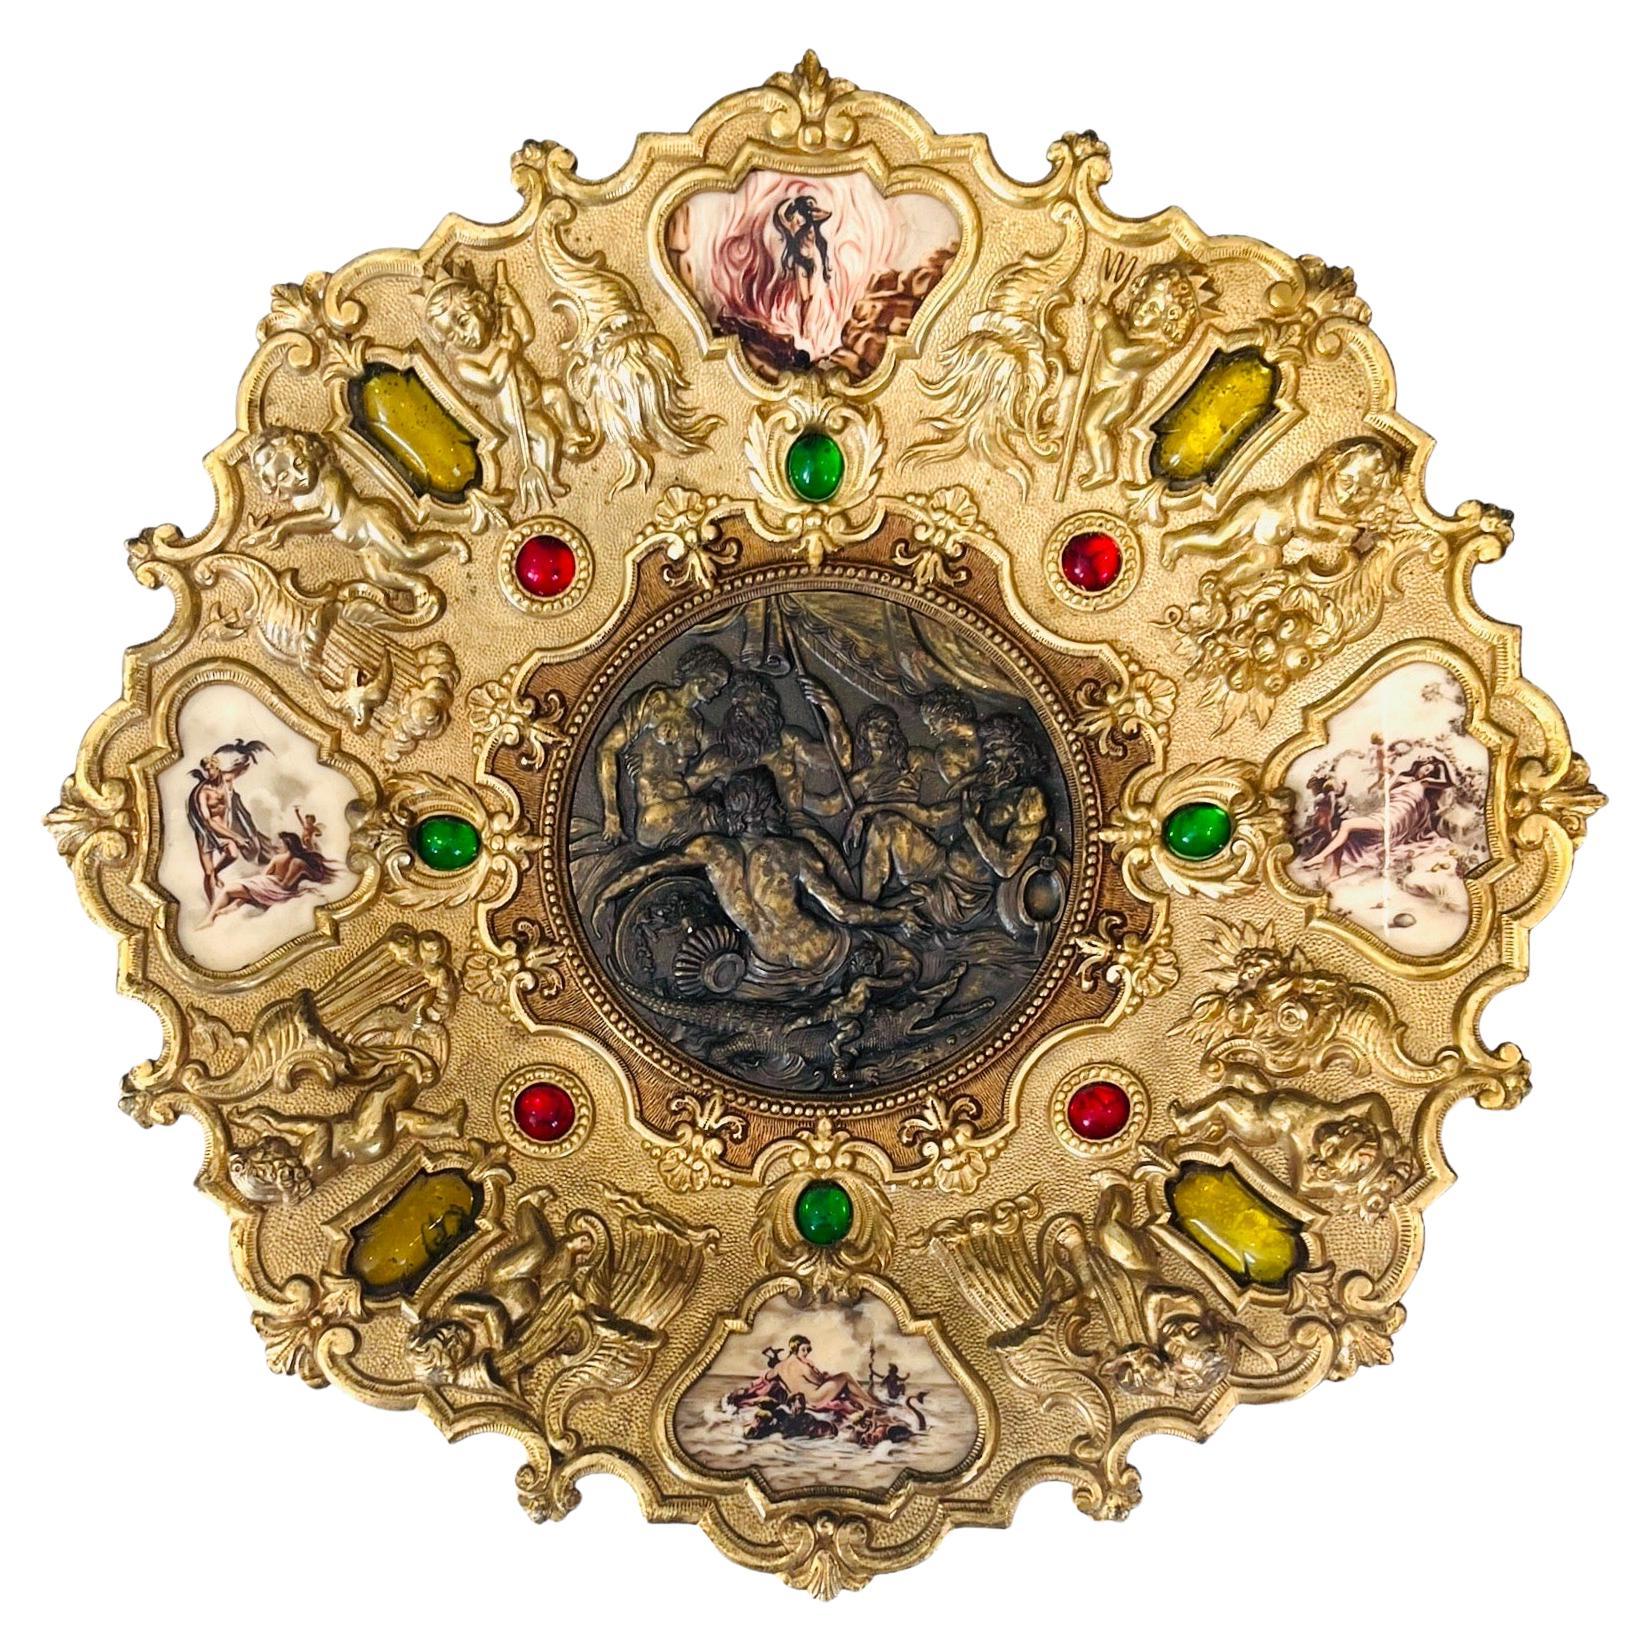 Grande assiette médaillon en bronze doré avec putti, mythologie, nymphe - Italie - 19e